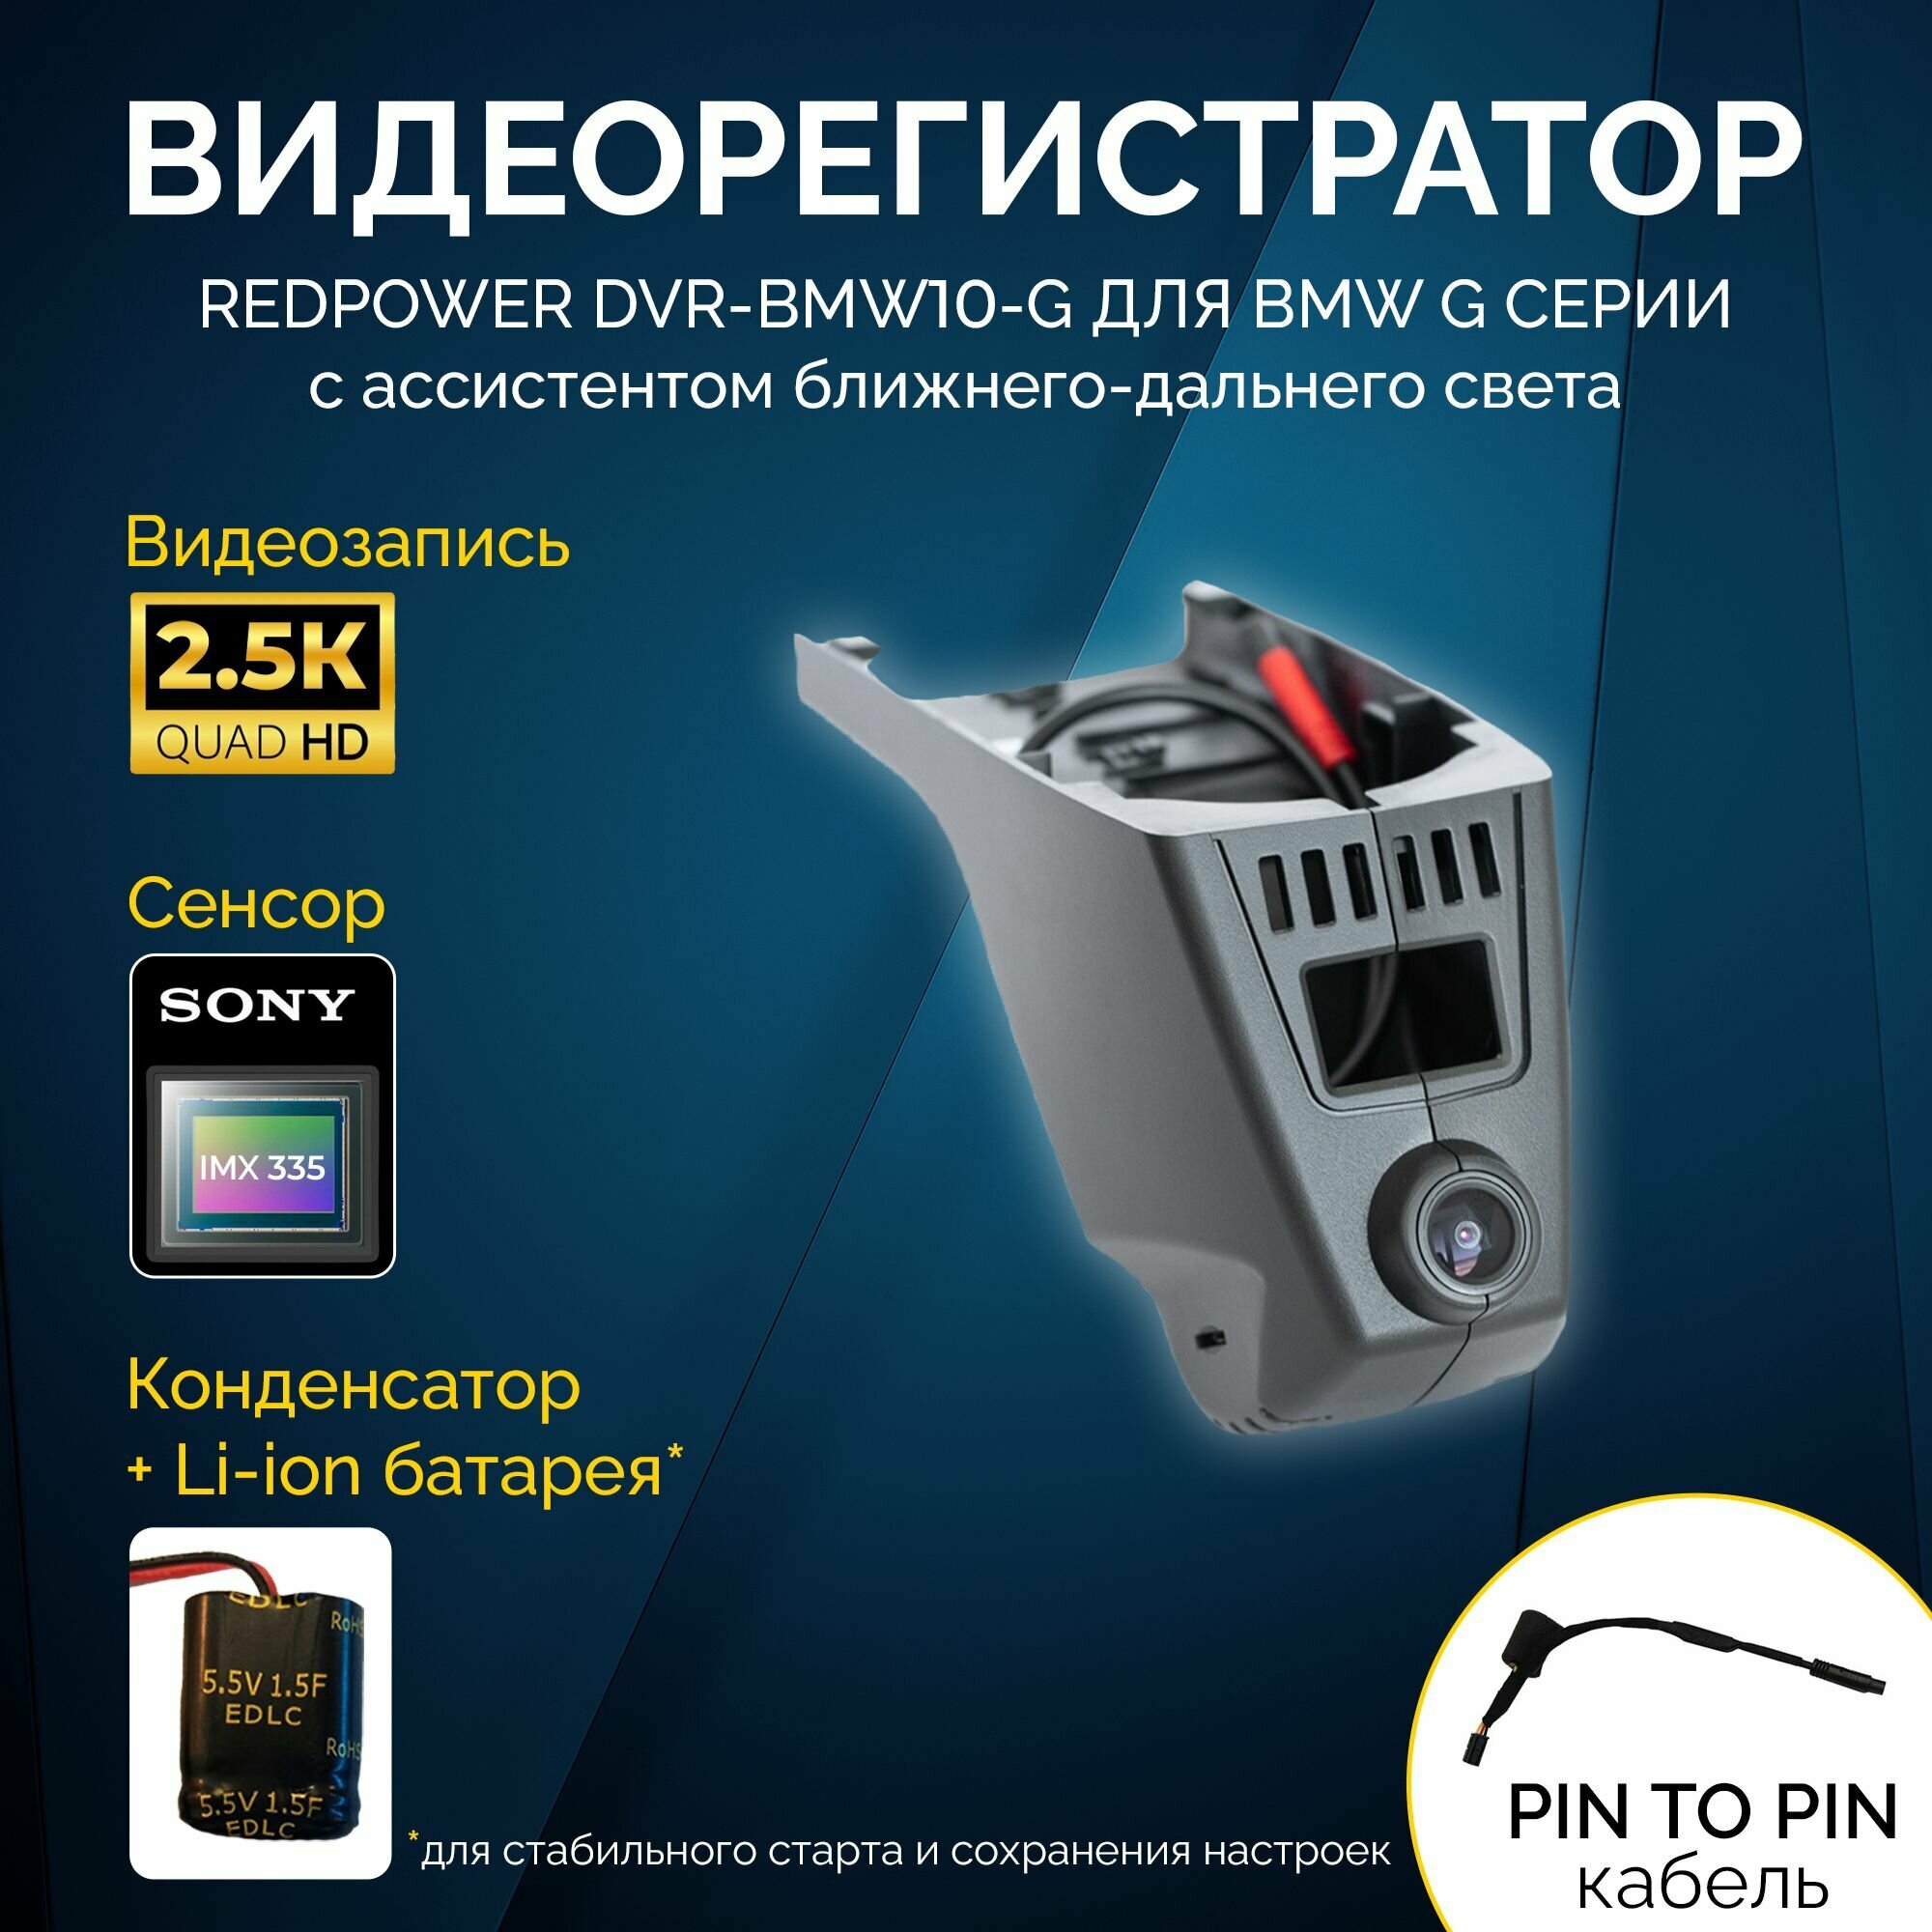 Штатный видеорегистратор RedPower DVR-BMW10-G для BMW с ассистентом ближнего/дальнего света